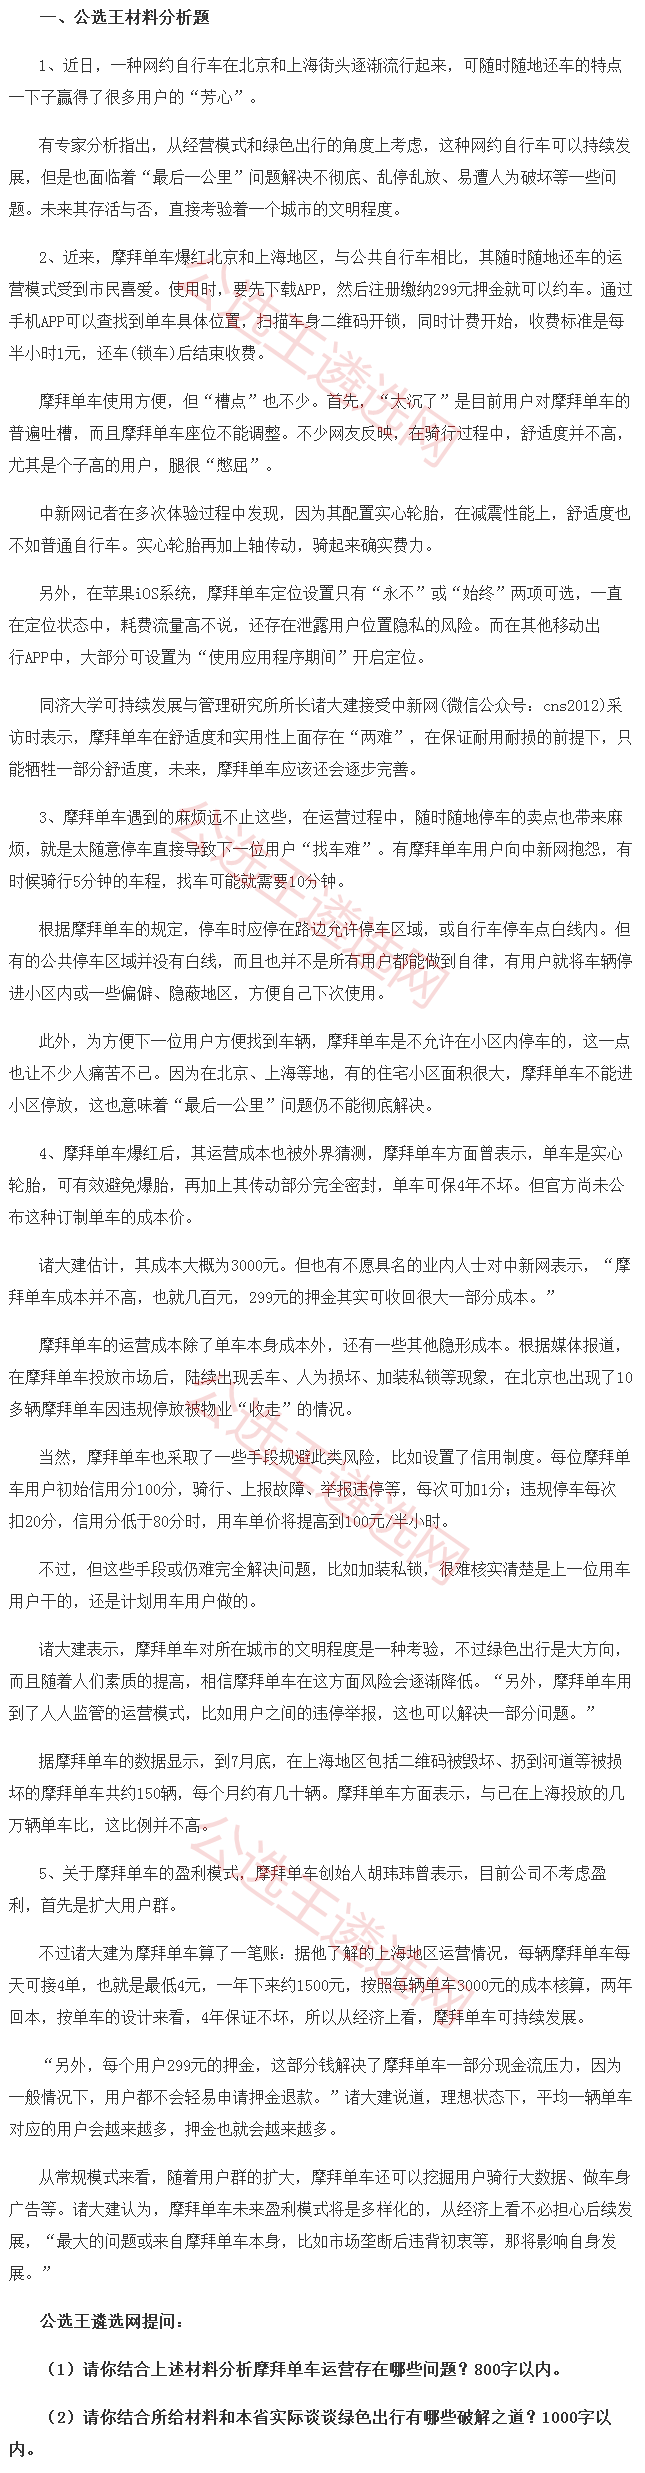 河南省委宣传部预测题1.1.png